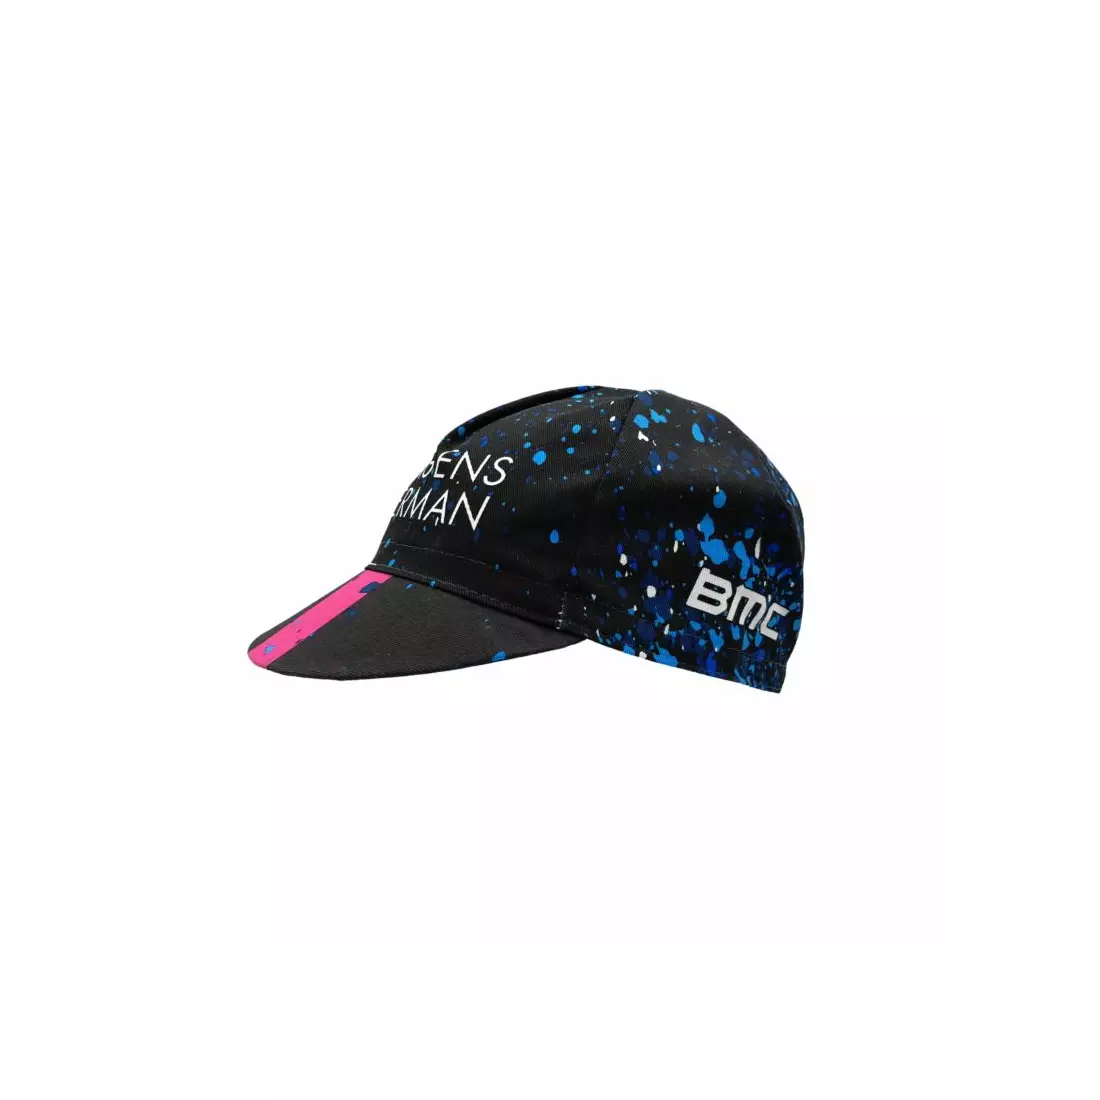 APIS PROFI AXEON cycling cap with visor